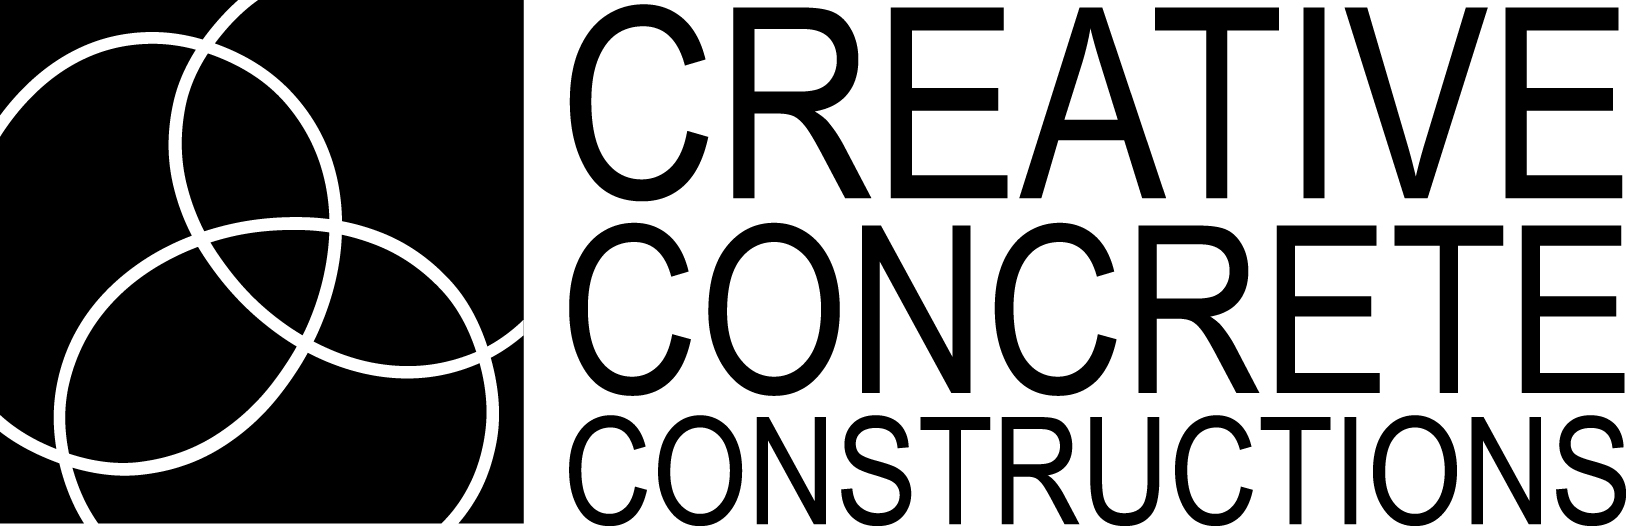 Creative Concrete Constructions